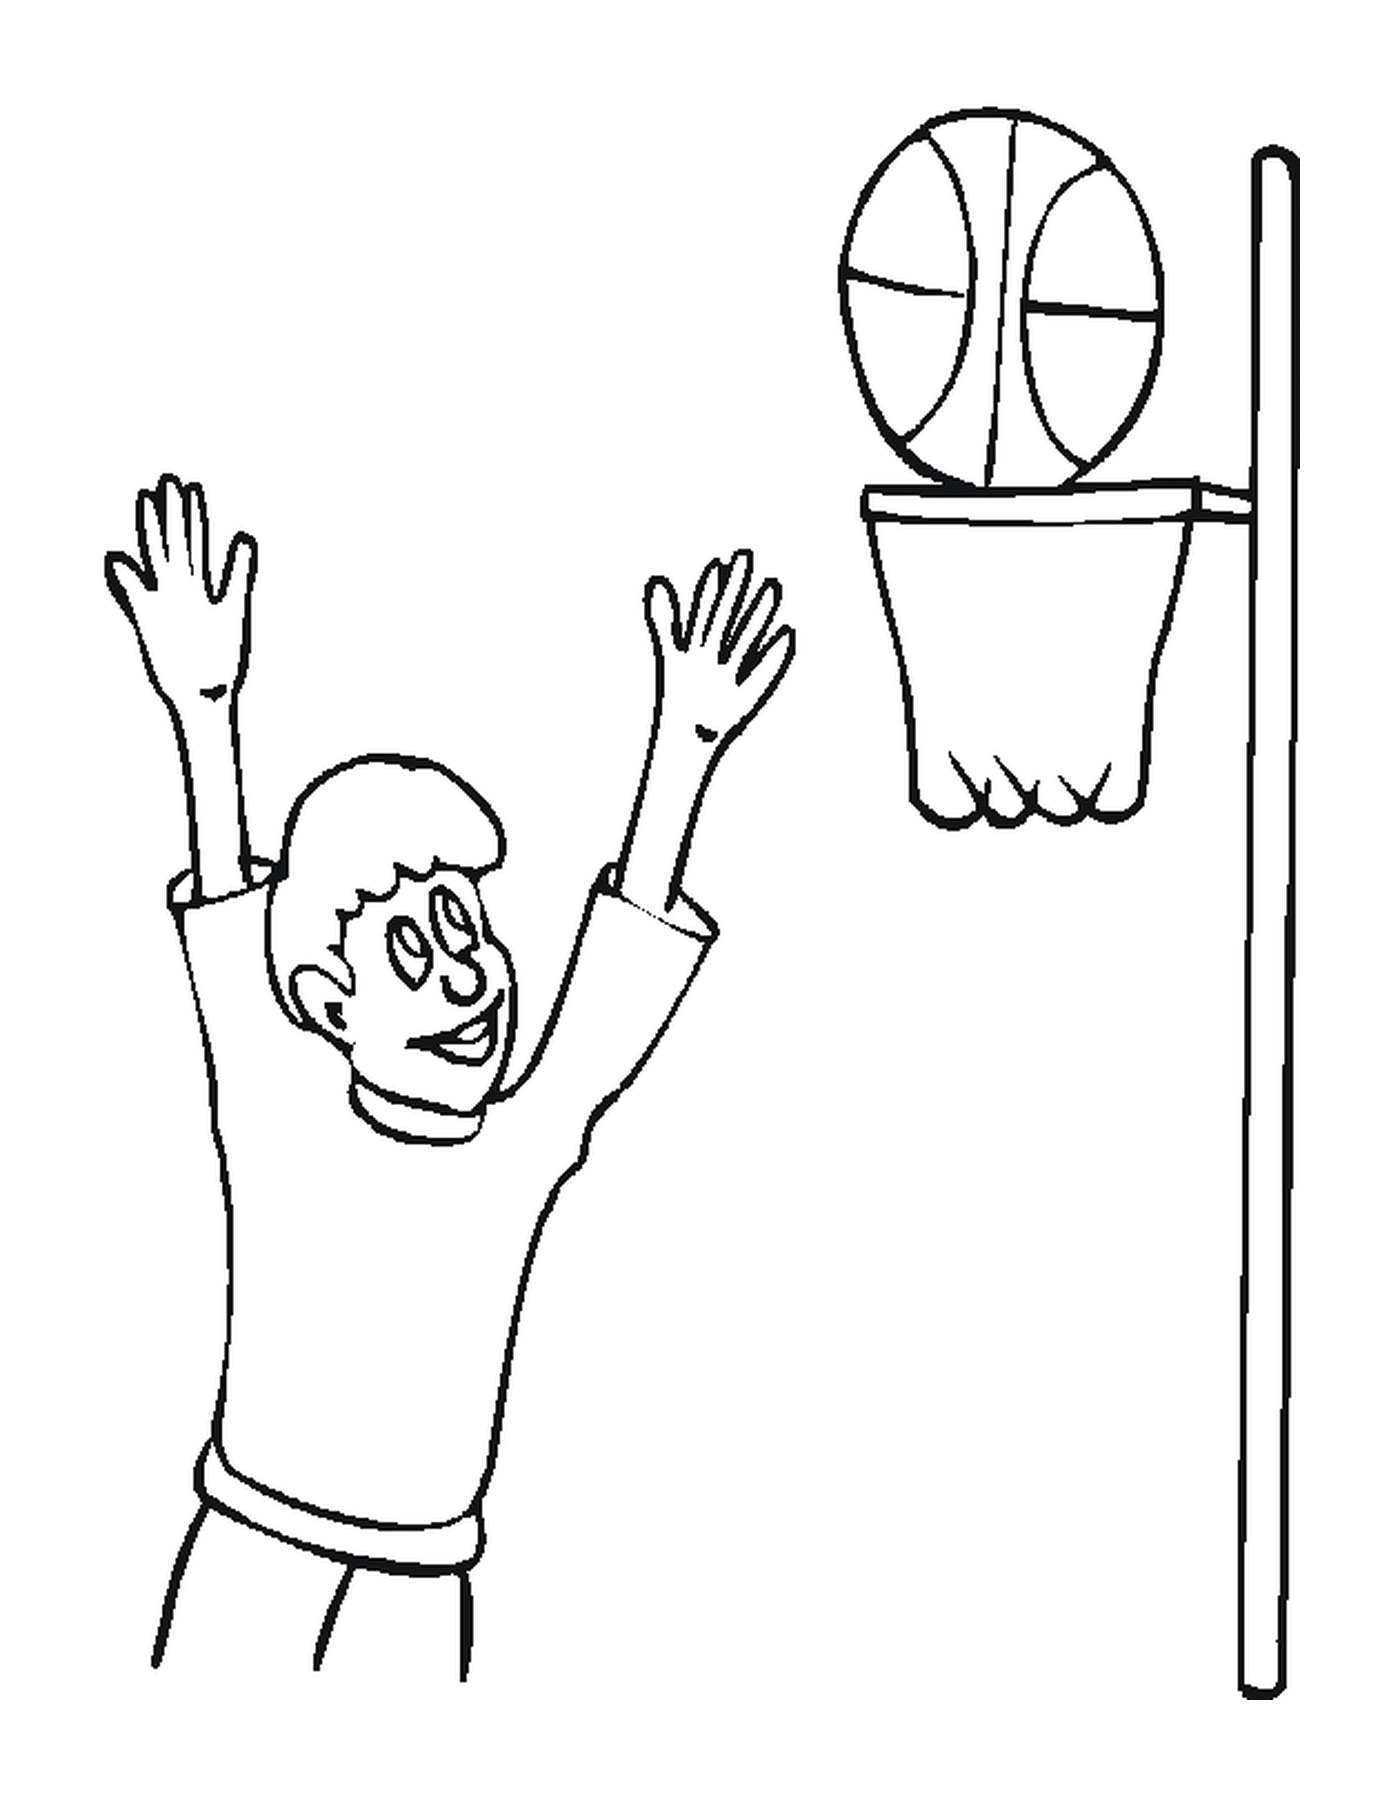  Un jugador de baloncesto juega en una habitación 